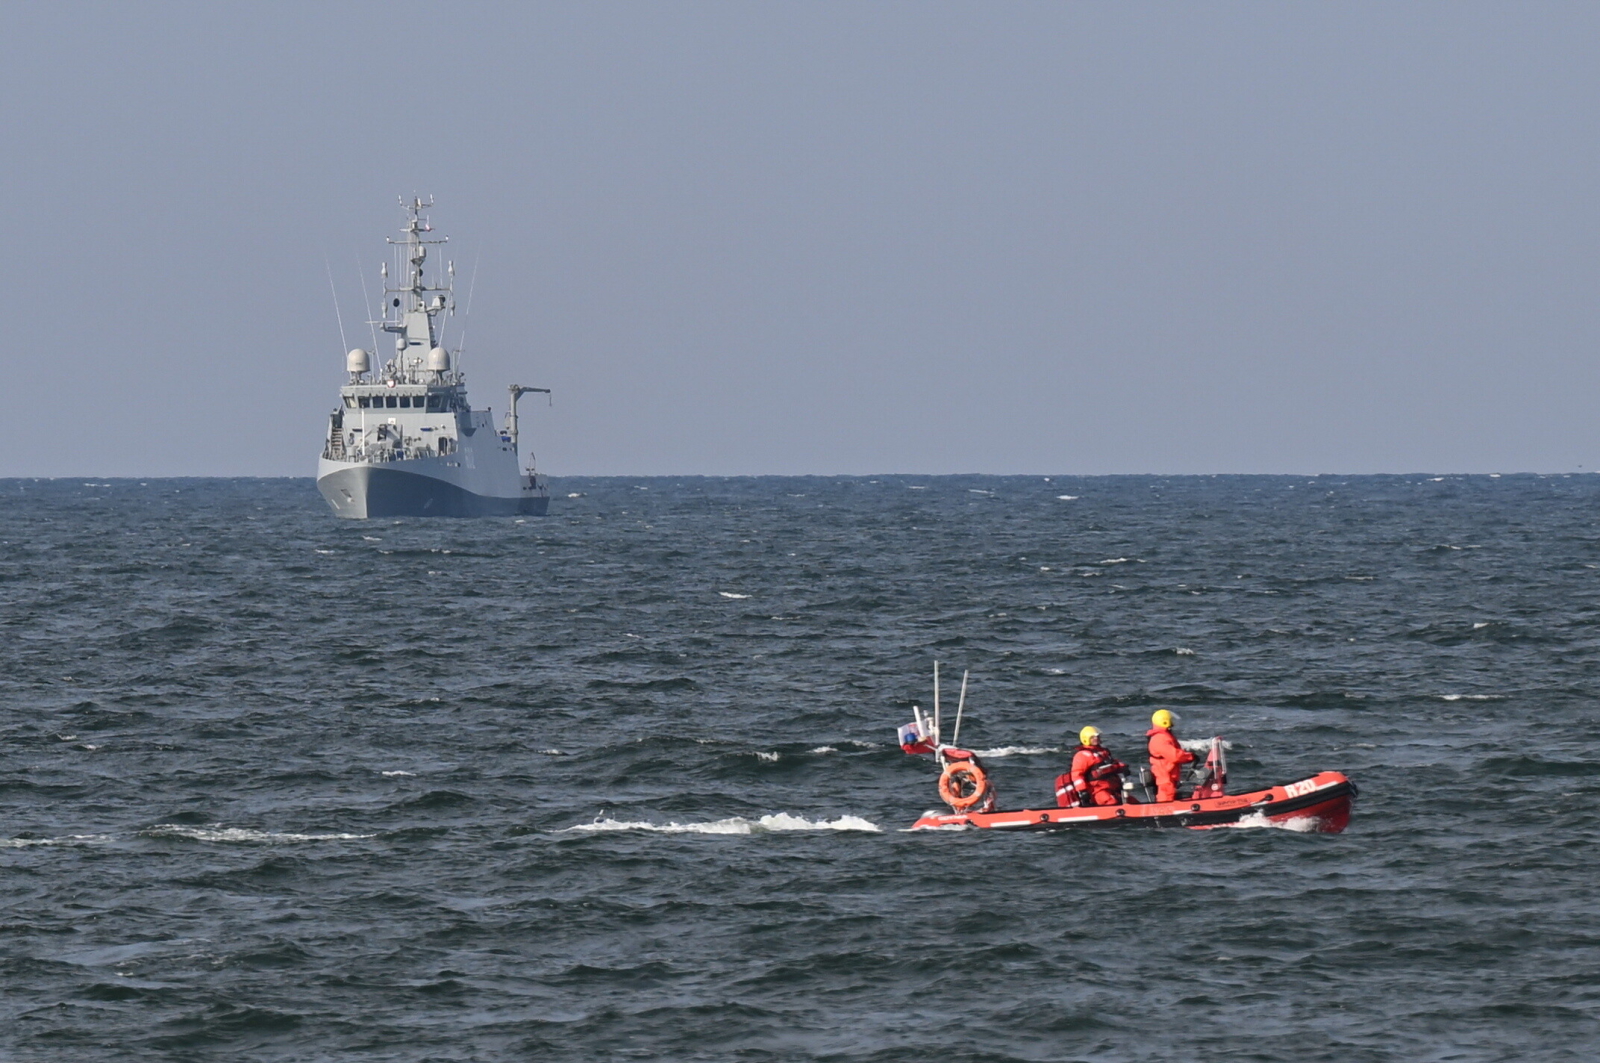 Marynarka Wojenna szuka płetwonurka Wojsk Specjalnych przy pomocy sonaru [AKTUALIZACJA] Radio Zachód - Lubuskie